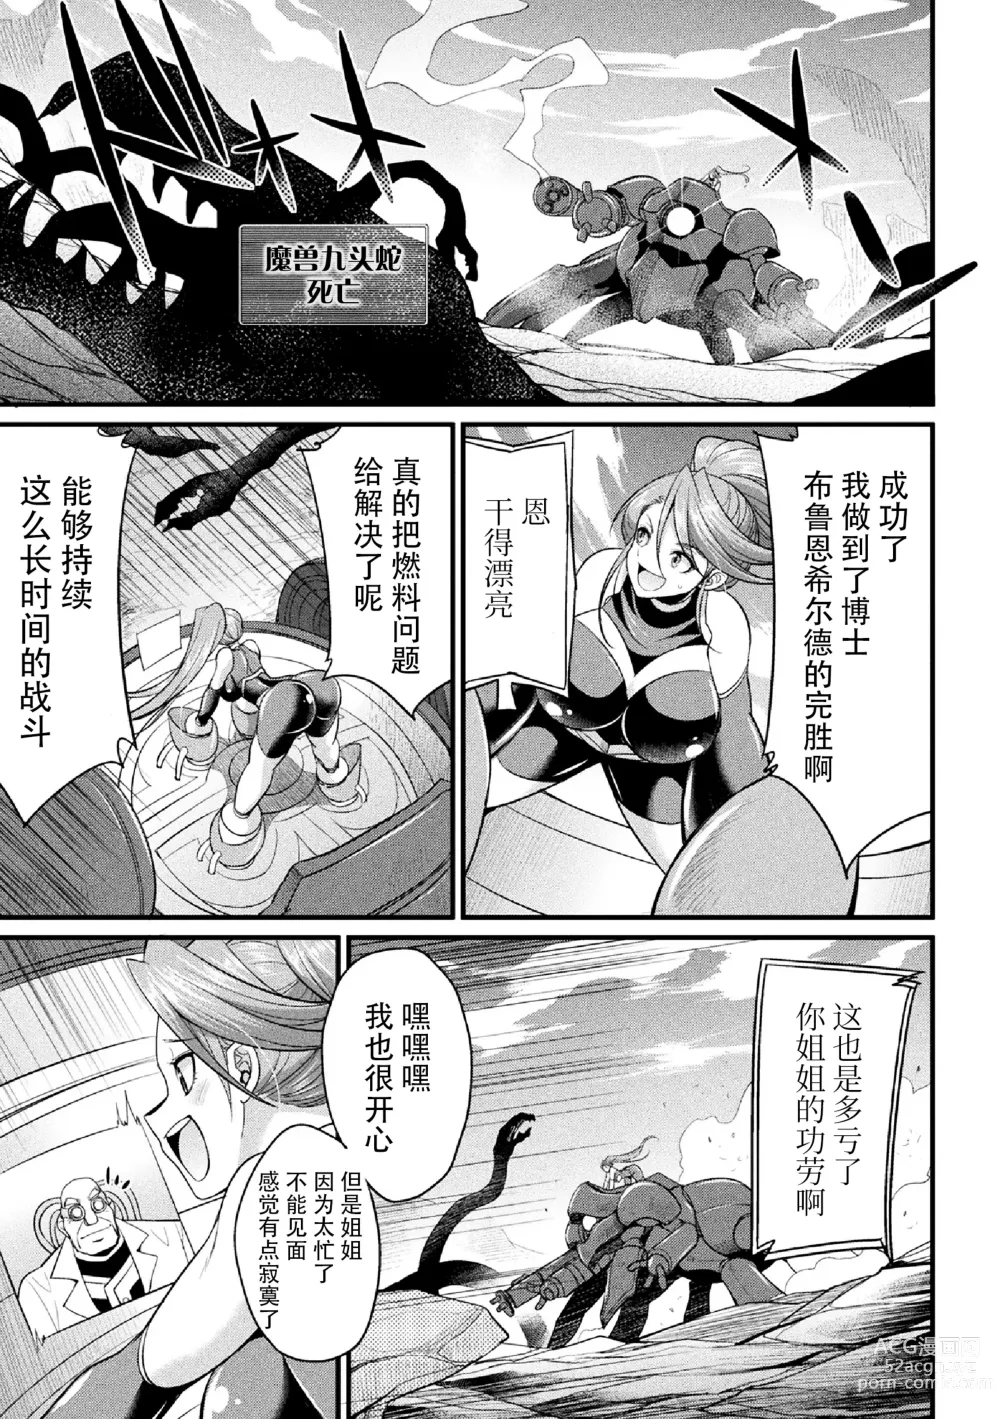 Page 19 of manga Ikusa Otome no Seisen ~Tsuika Status Futanari